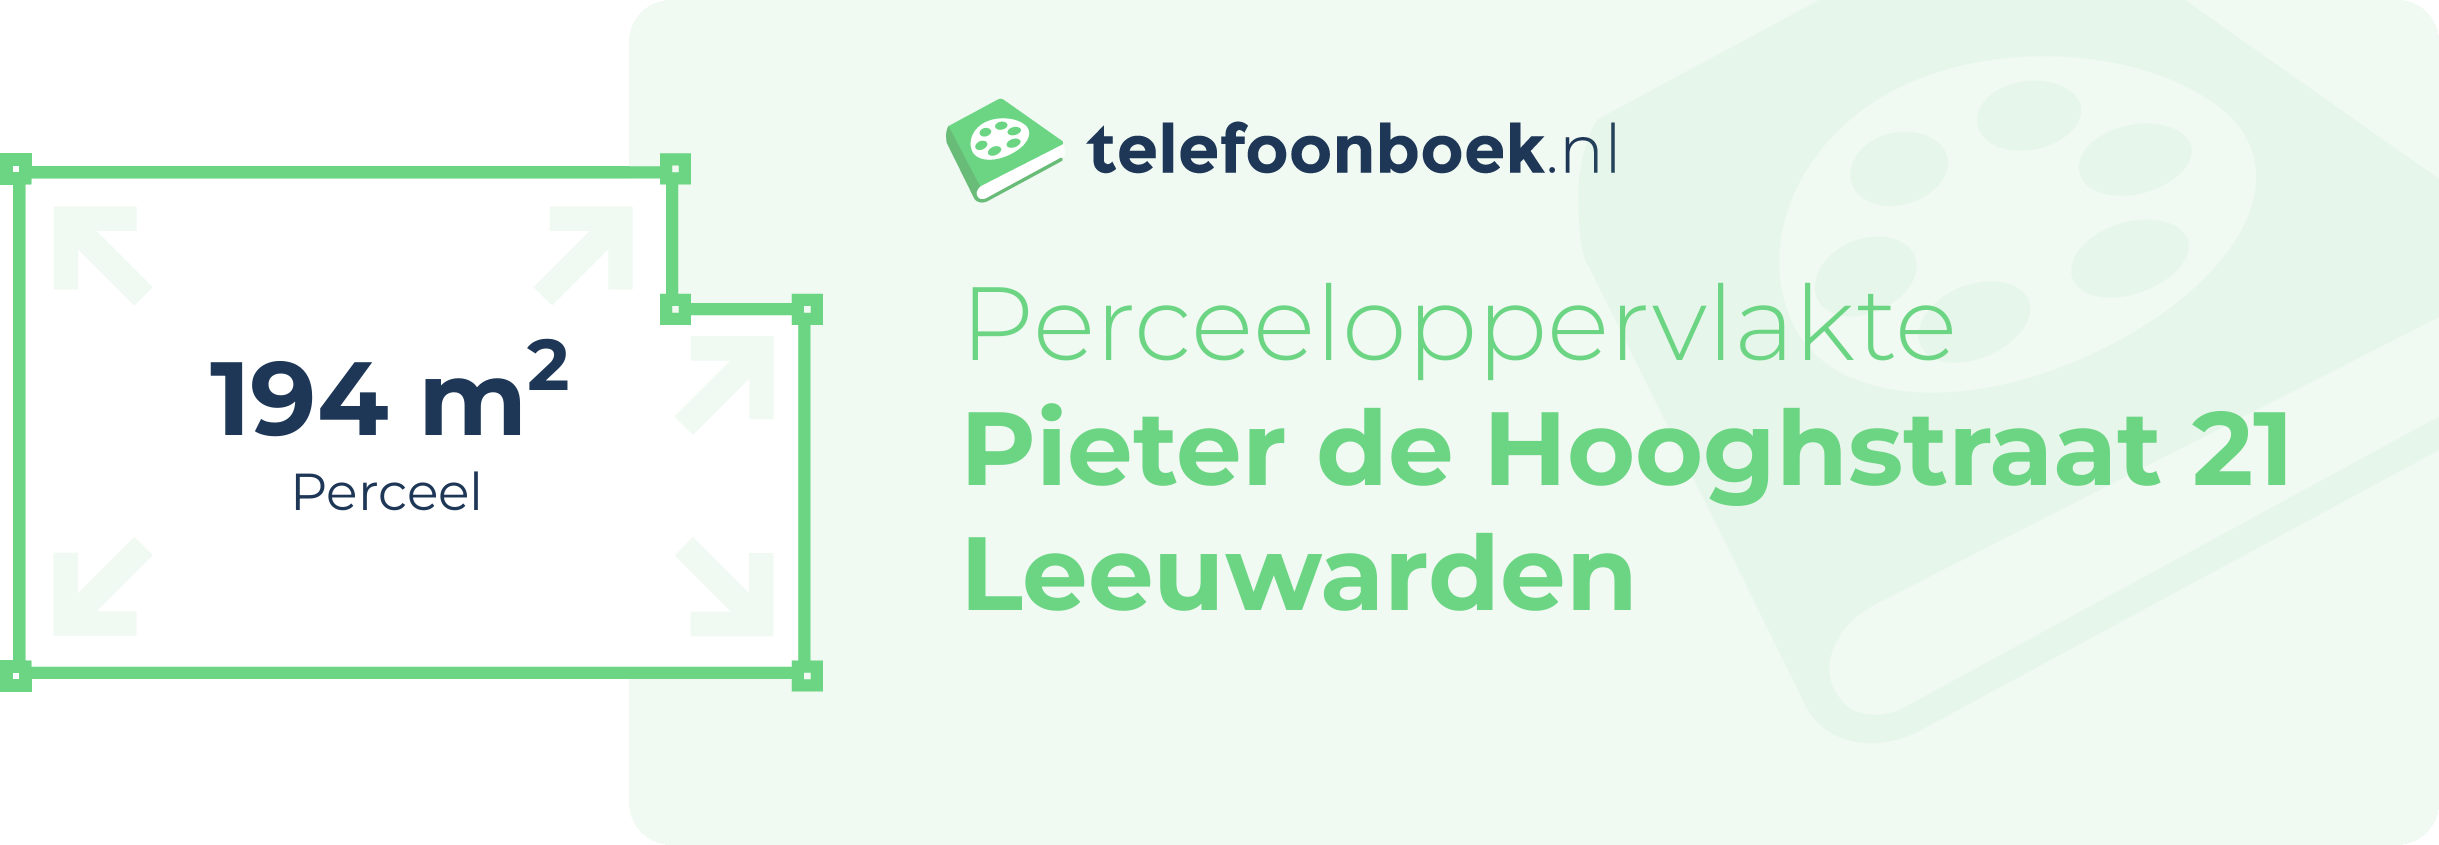 Perceeloppervlakte Pieter De Hooghstraat 21 Leeuwarden